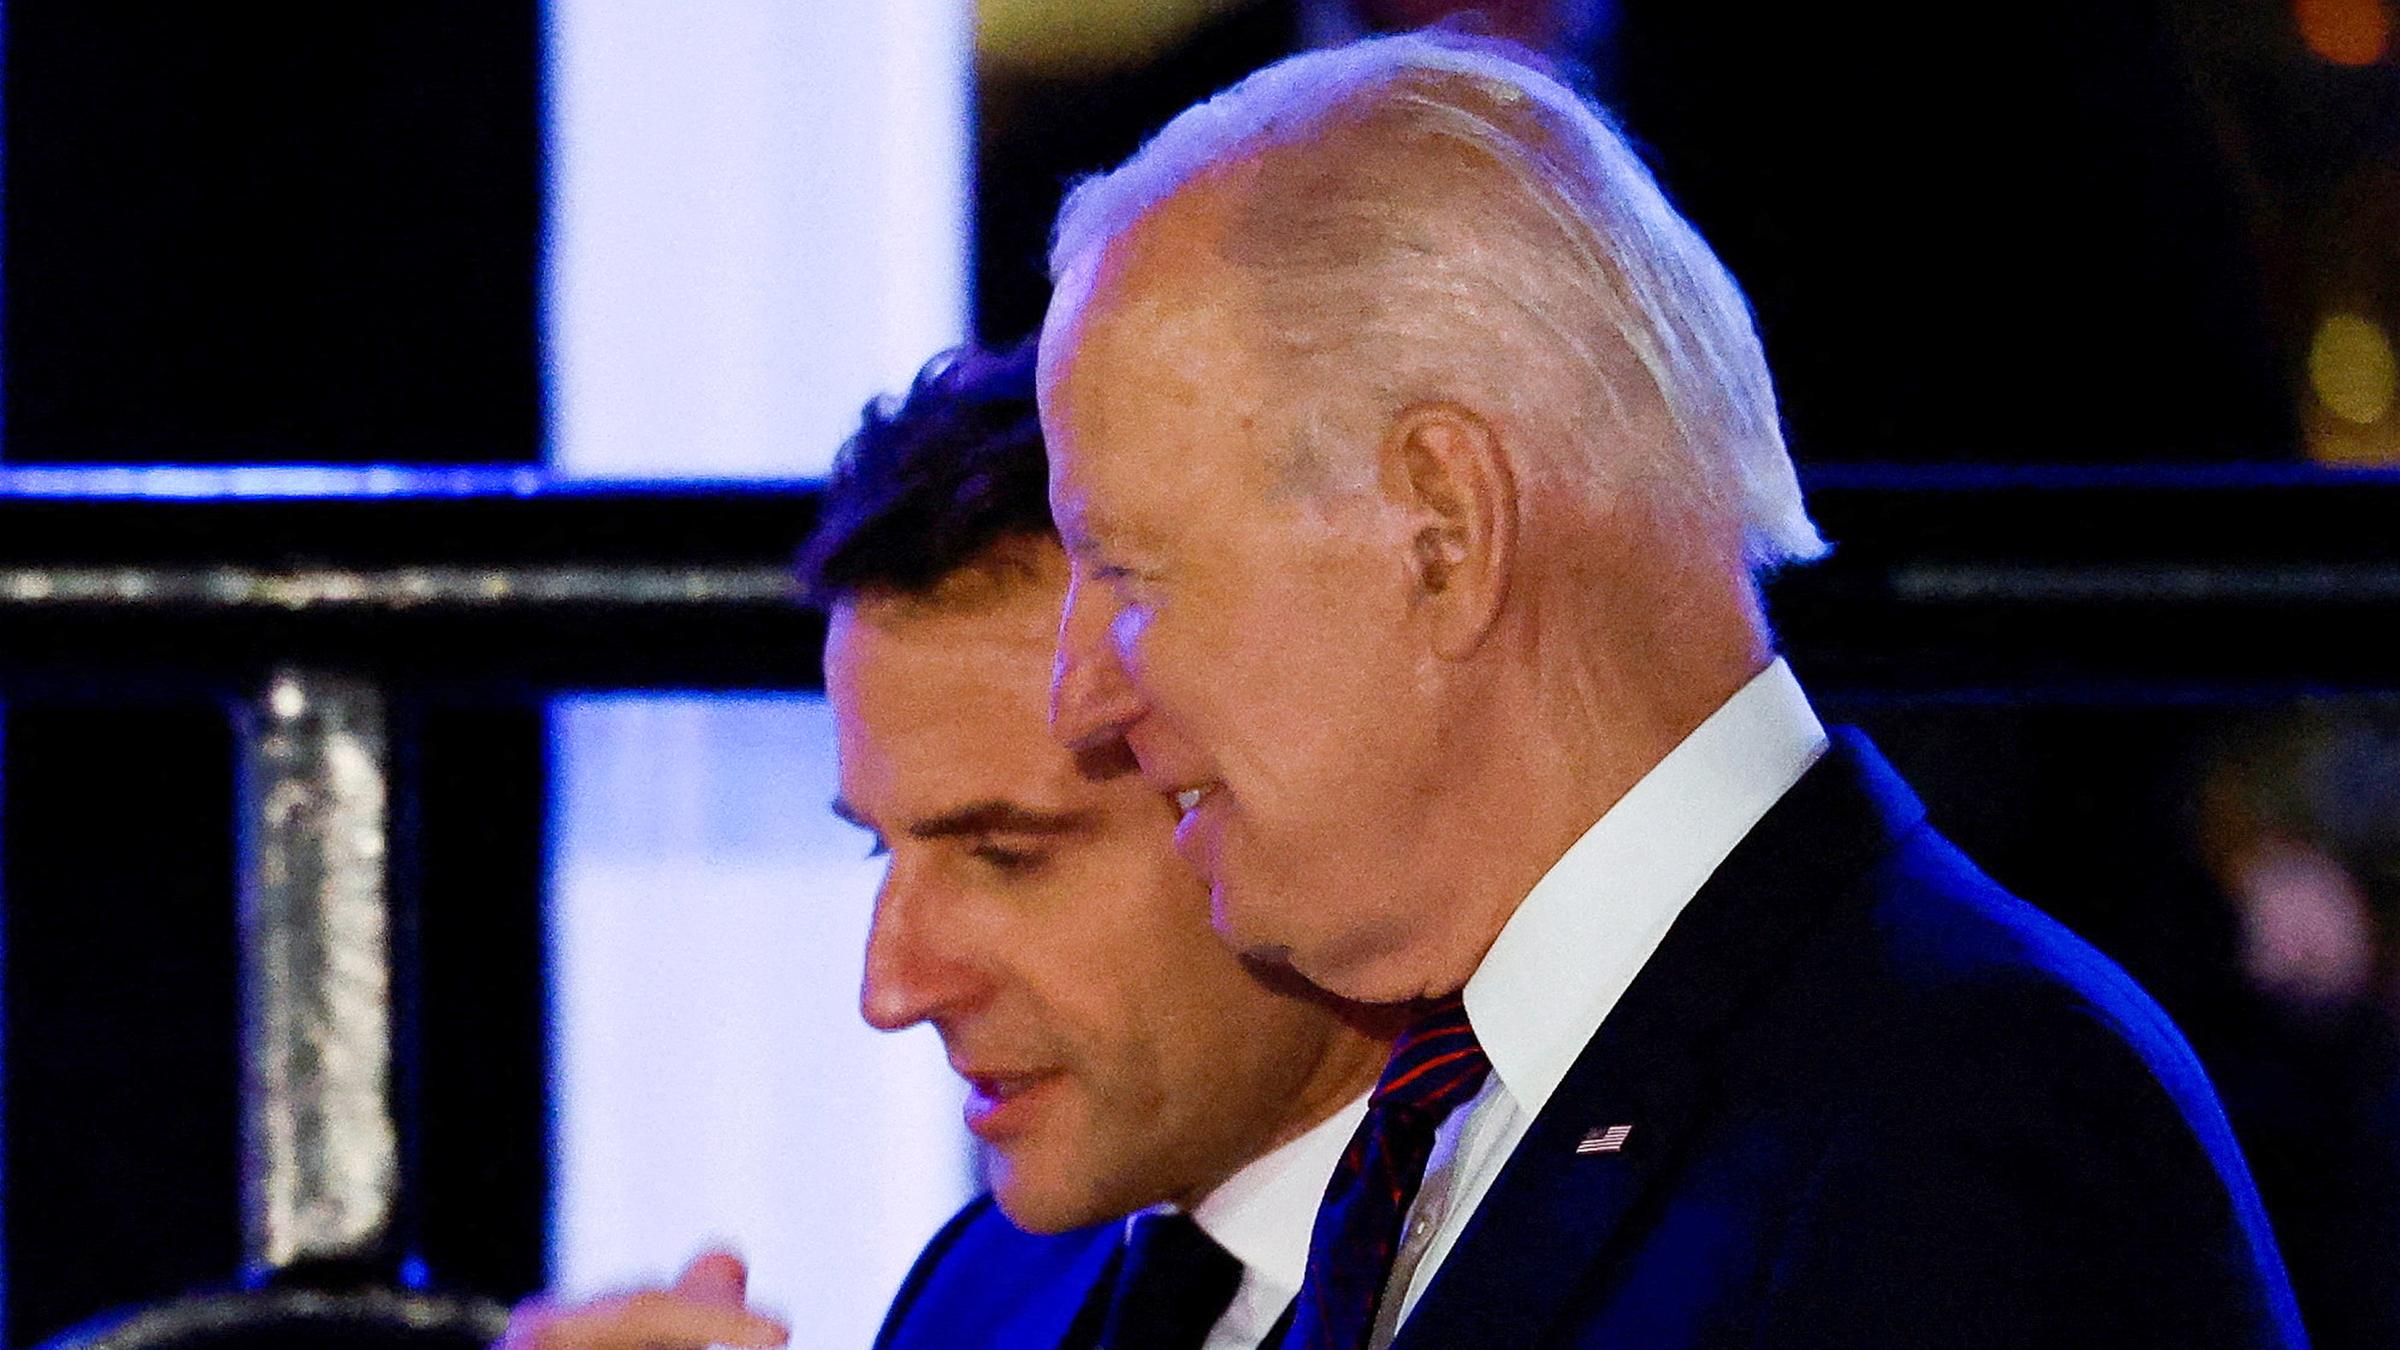 US-Präsident Joe Biden und der französische Präsident Emmanuel Macron sprechen am 30. November 2022 vor dem Restaurant Fiola Mare im Stadtteil Georgetown in Washington, USA.